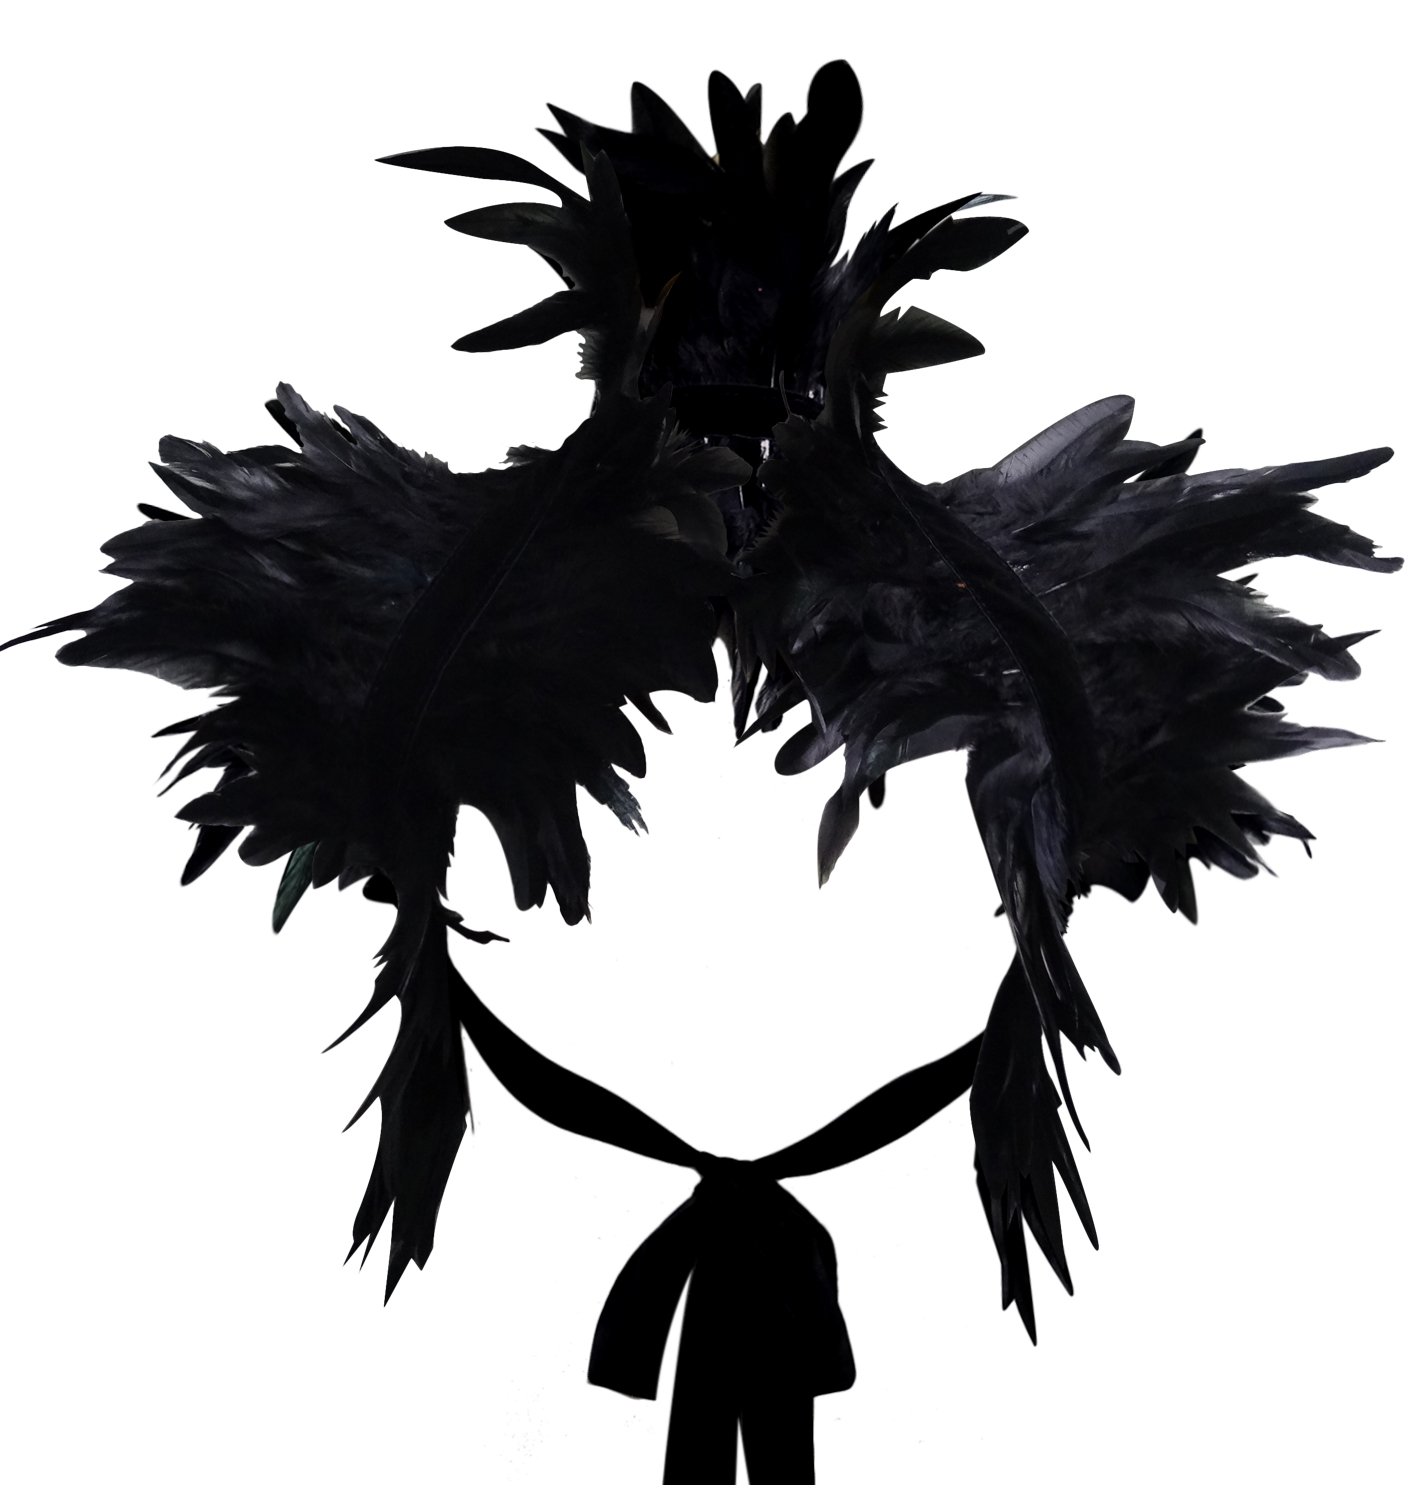 keland Victorian reale natürliche Feder Shrug Schal Schulterumhang Cape Gothic Kragen Halloween-Kostüm (Schwarz)